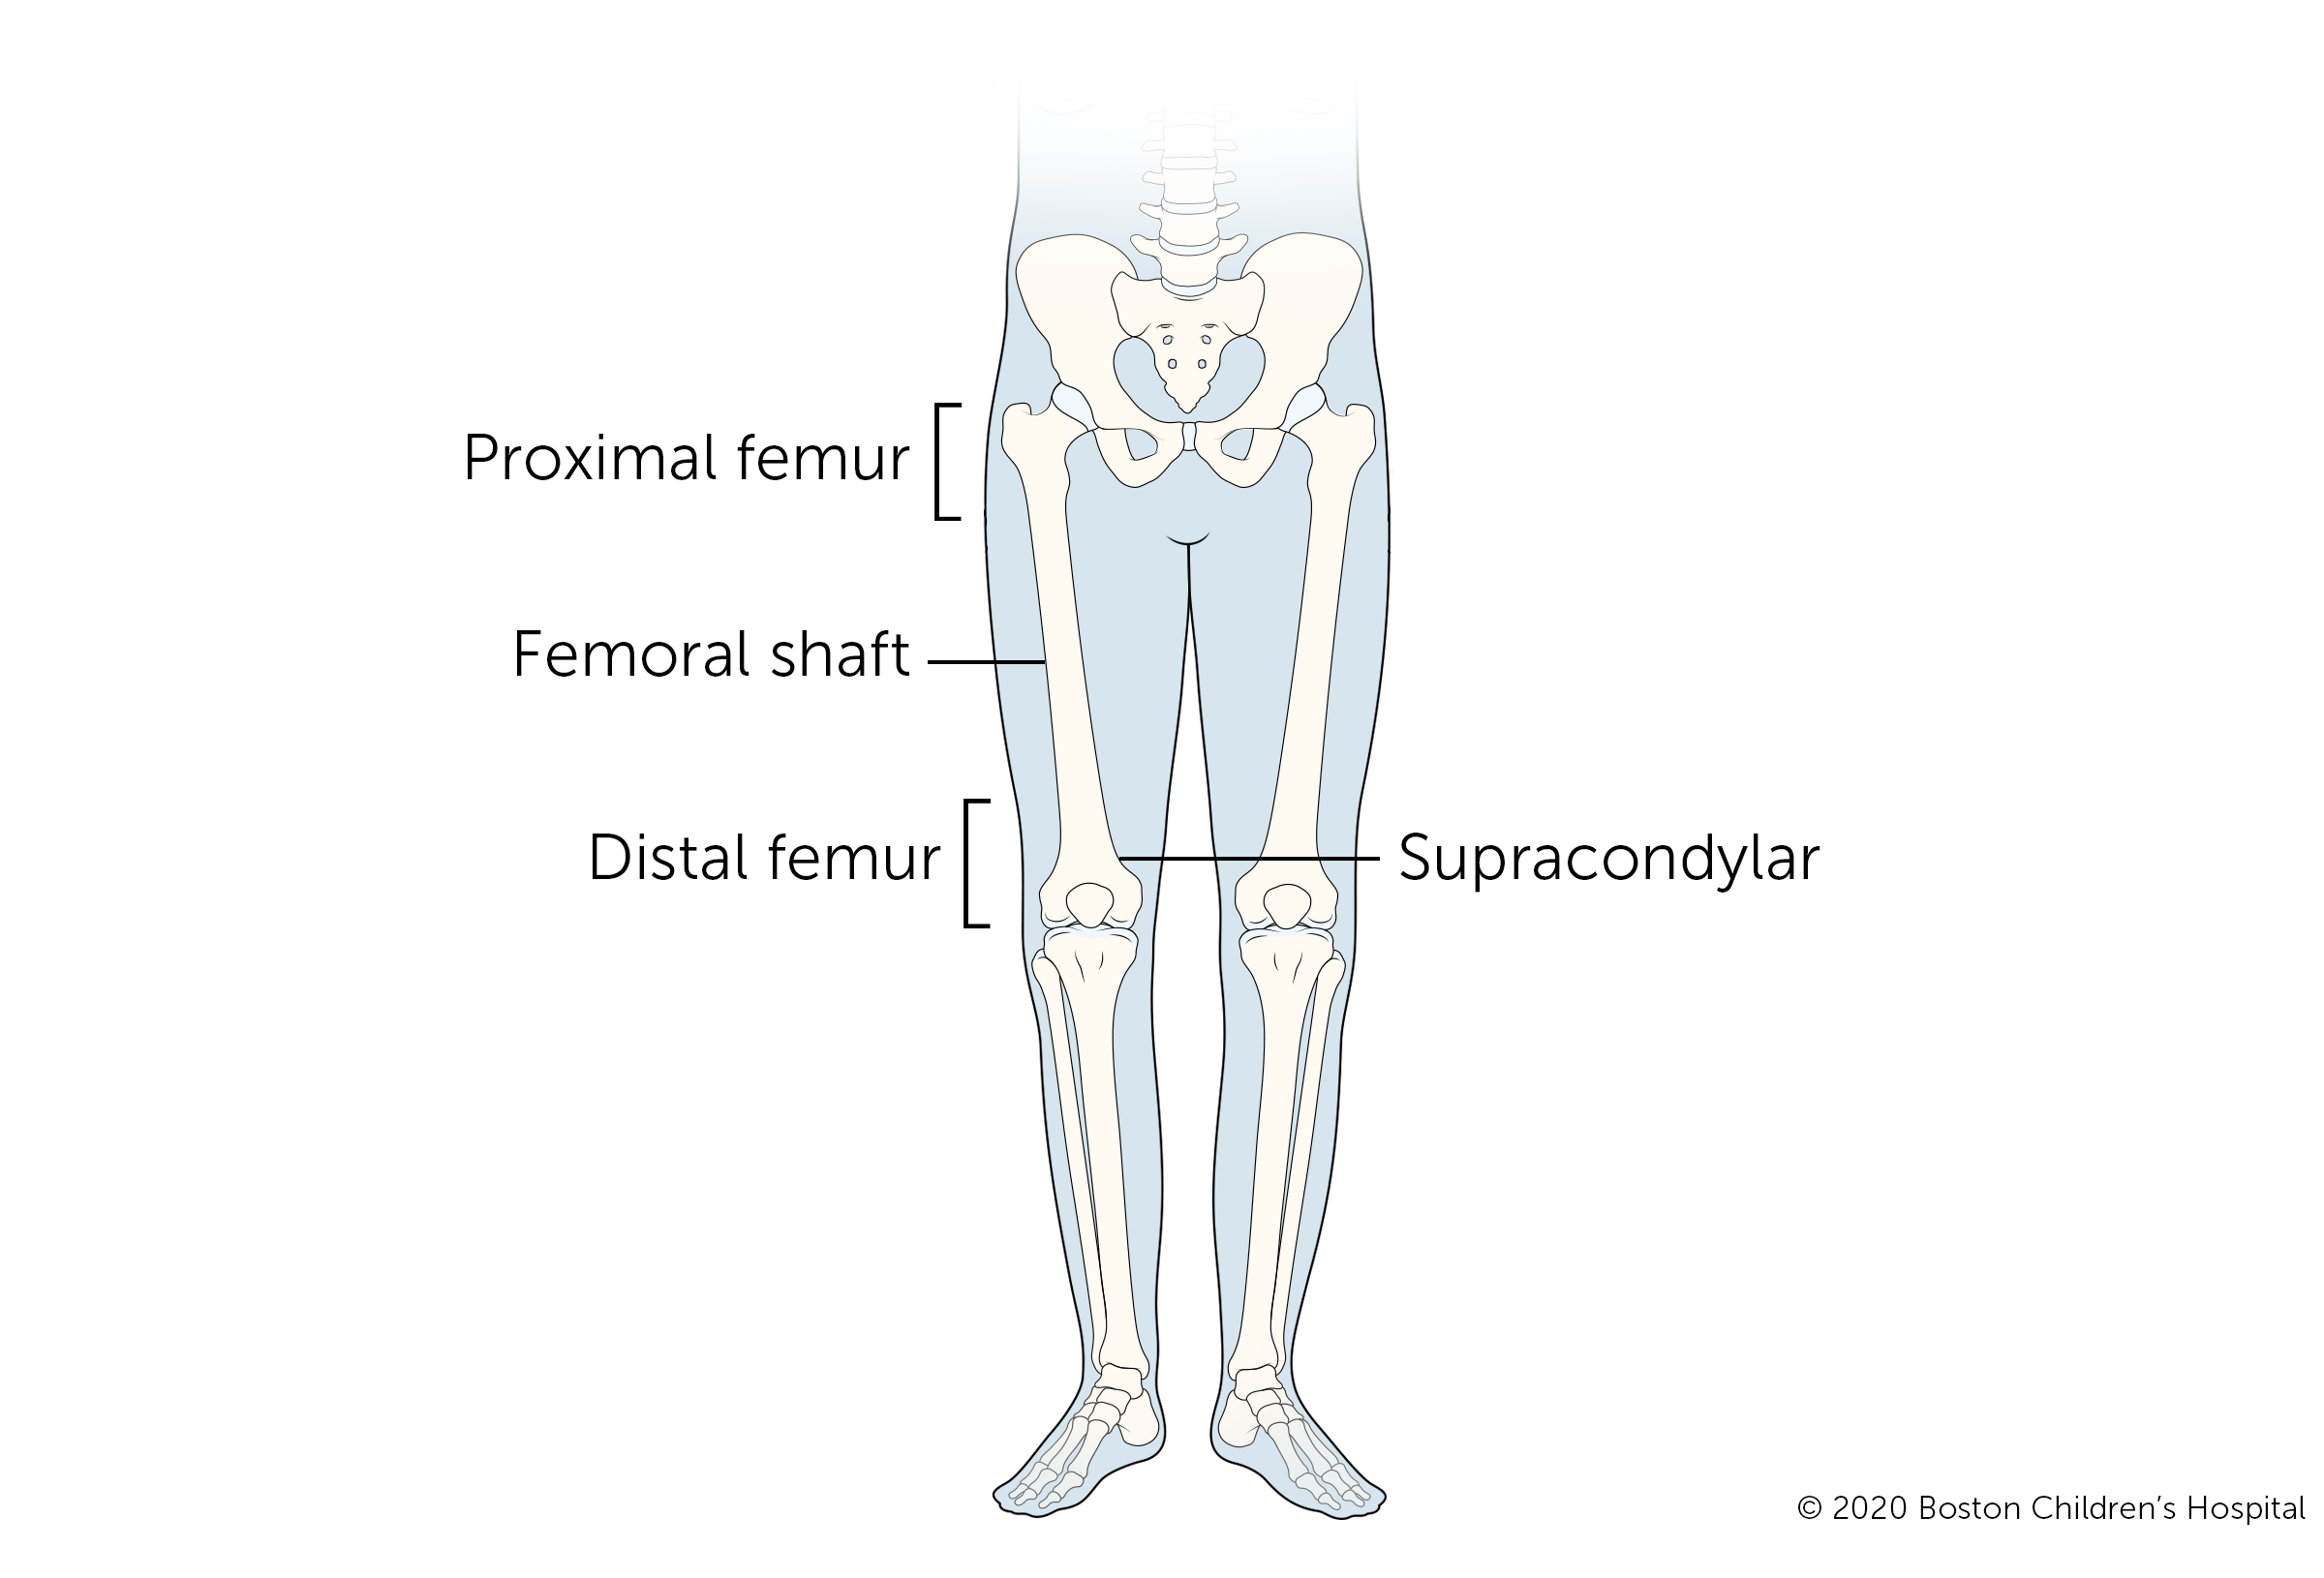 腿骨折的四种类型是股骨近端骨折、股骨骨干骨折、股骨髁上骨折和股骨远端骨折。